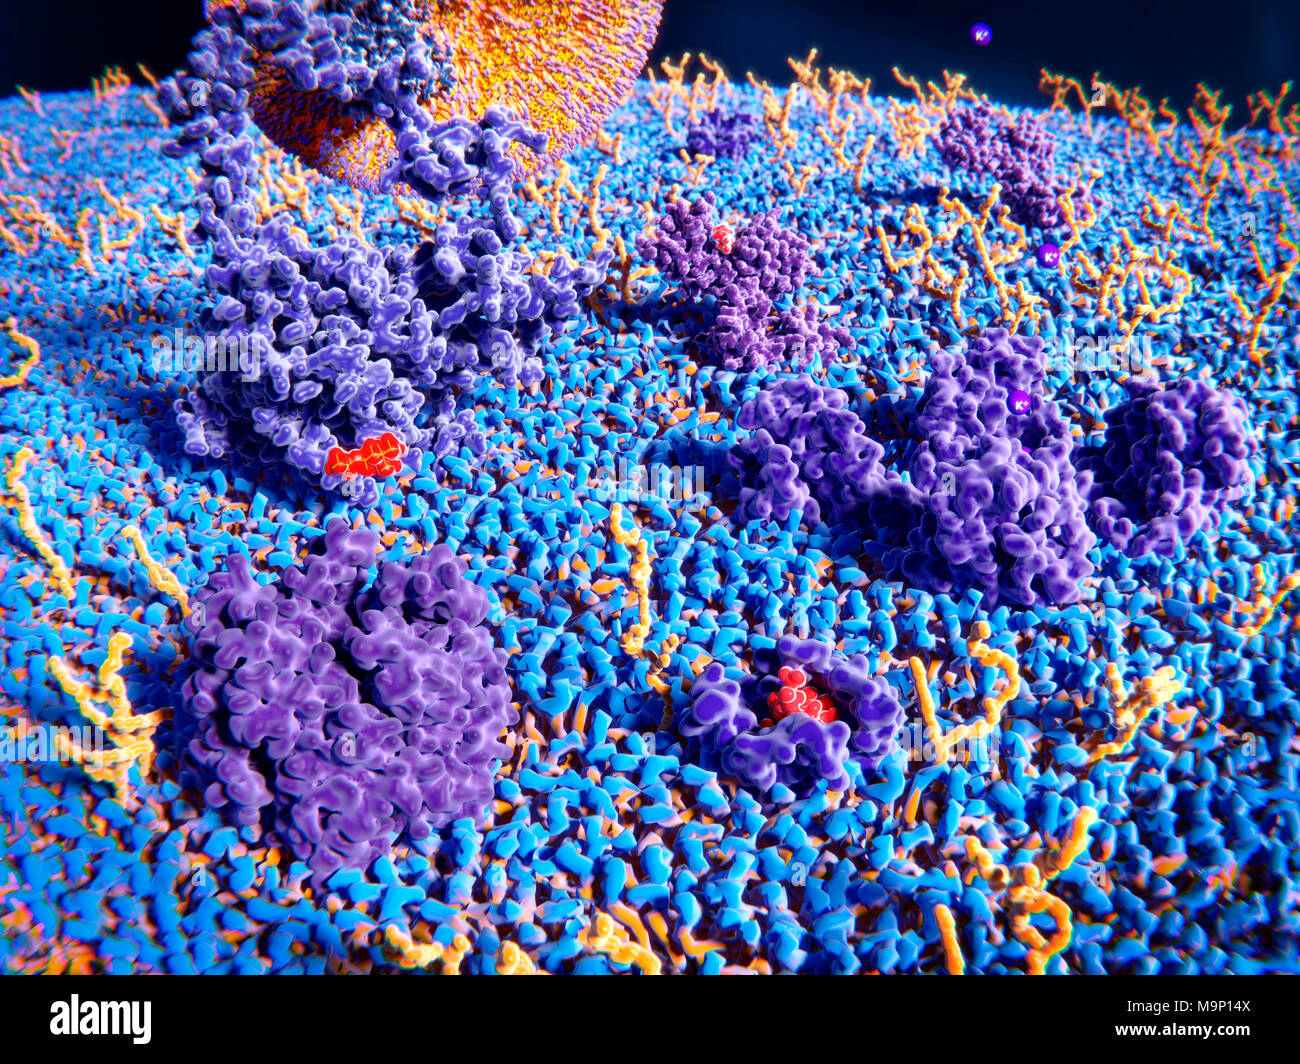 Darstellung der Außenseite der Zellmembran. Transmembranproteine (lila) und glykolipiden (gelb) ragen aus der Oberfläche der Membran. Links oben ist ein LDL (Low Density Lipoprotein)-Rezeptor gebunden zu einem LDL Partikel (große, orange und violett). Auf der rechten Seite des LDL-Rezeptors ist eine Histamin-Kanal, der eine Histamin-Molekül. In der Mitte rechts ist ein kaliumkanal mit Kalium (K+) Ionen. Vorne links ist ein und Acetylcholin Acetylcholin Rezeptor Molekül und rechts vorne ist ein Delta opioid Rezeptor mit einem gebundenen endorphin Molekül. Stockfoto